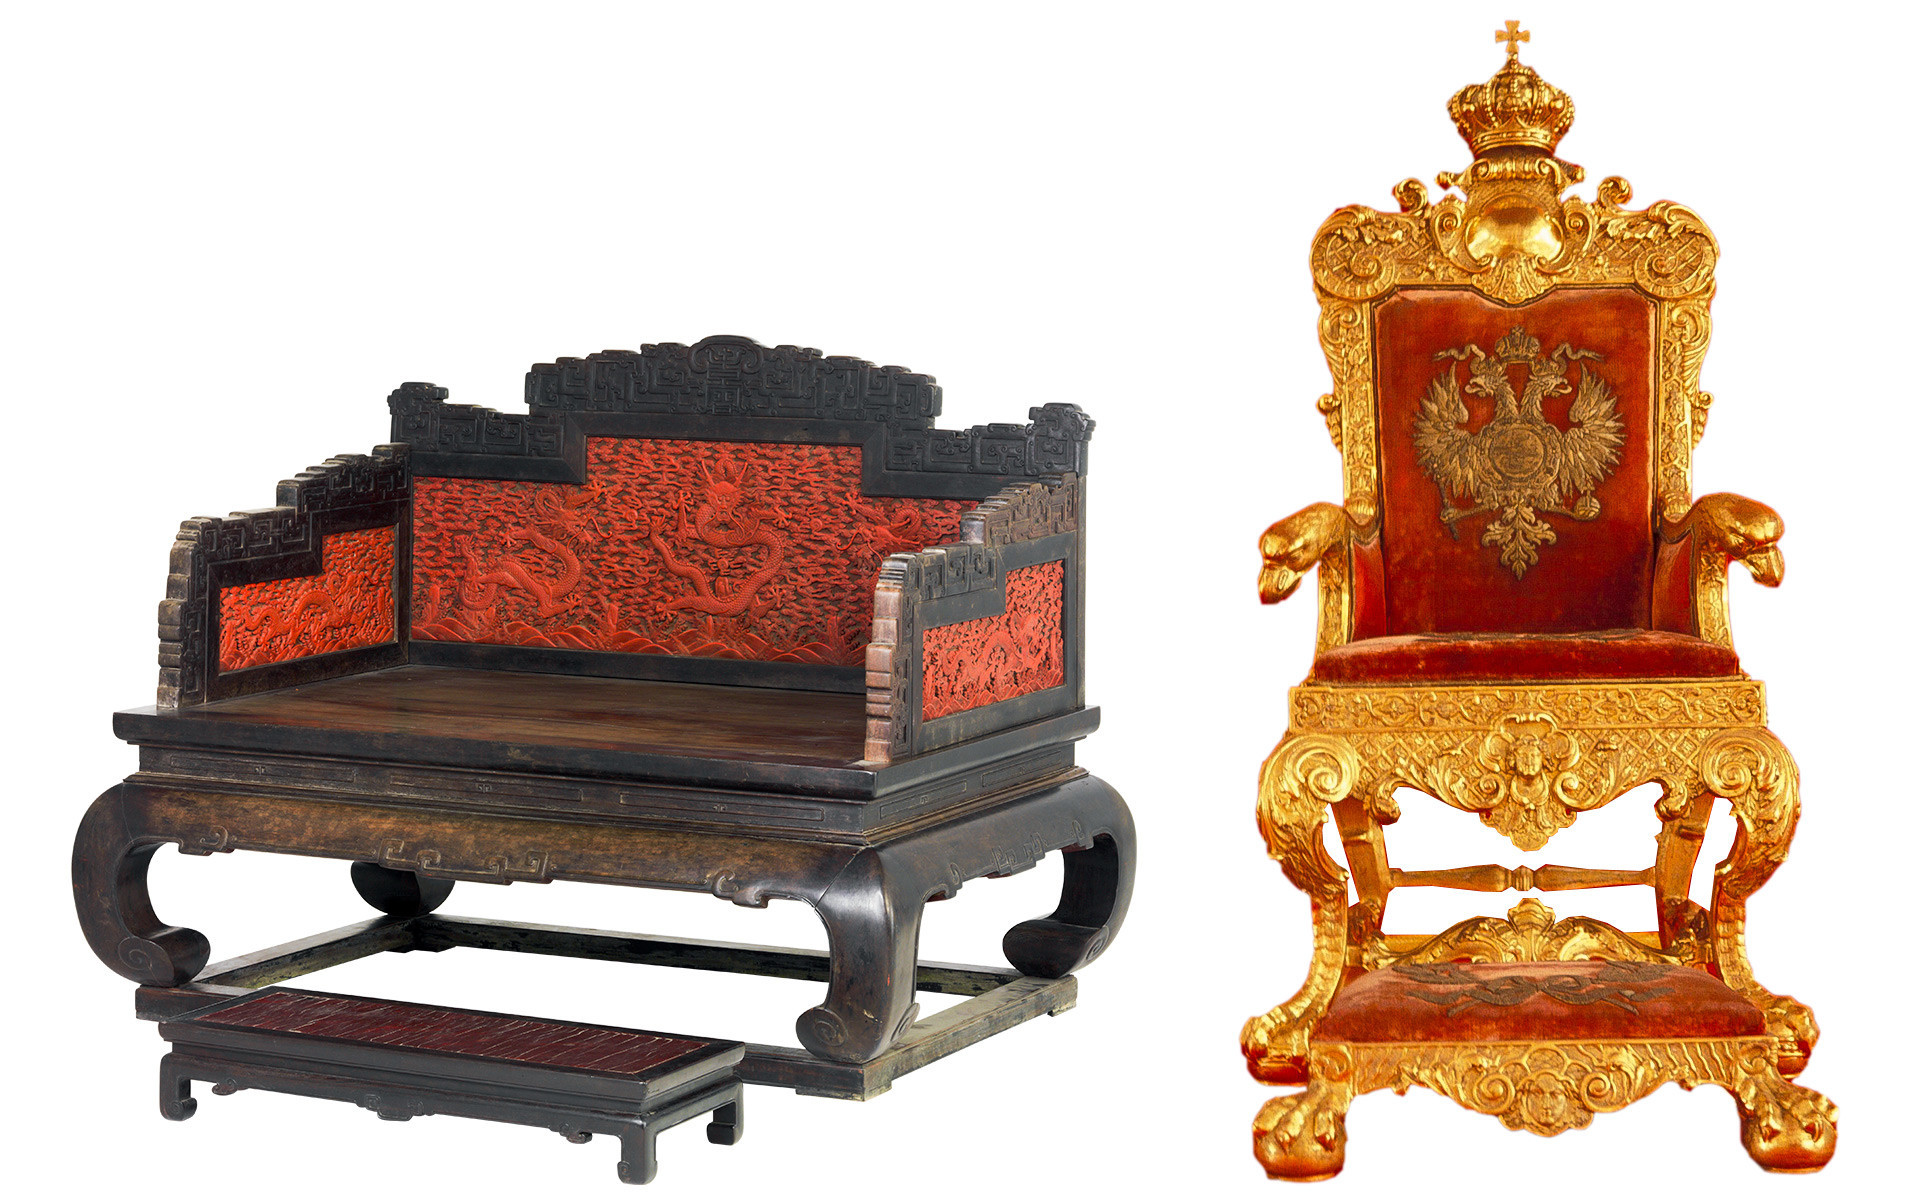 À esquerda, o trono do imperador da era Quing (1644-1912). À direita, o trono de Pável 1° da Rússia.